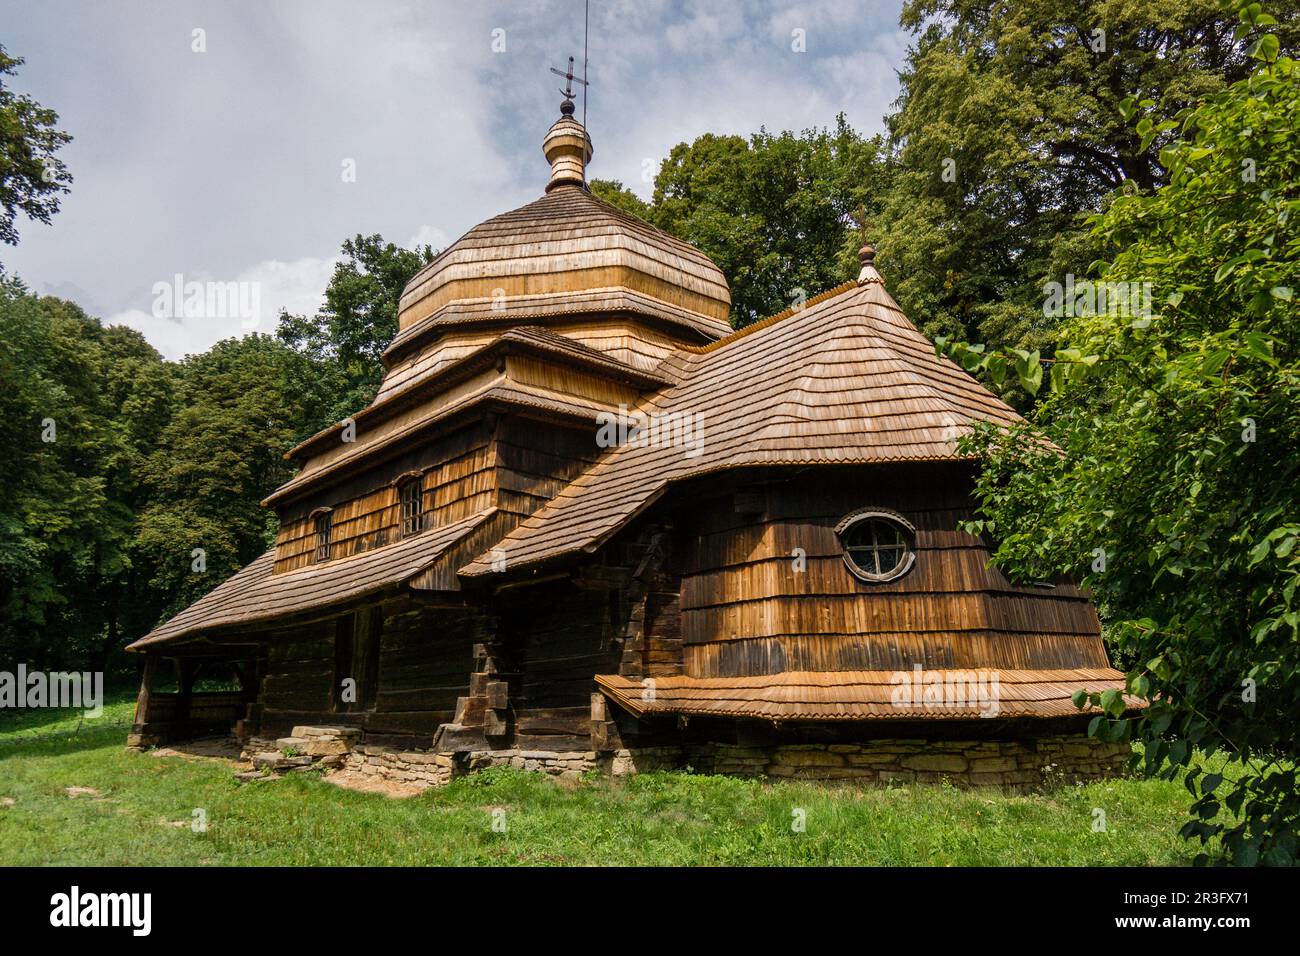 iglesia de madera, Ulucz, templo uniata construida en 1510-1659, valle del rio San, voivodato de la Pequeña Polonia, Cárpatos, Polonia, europe. Stock Photo